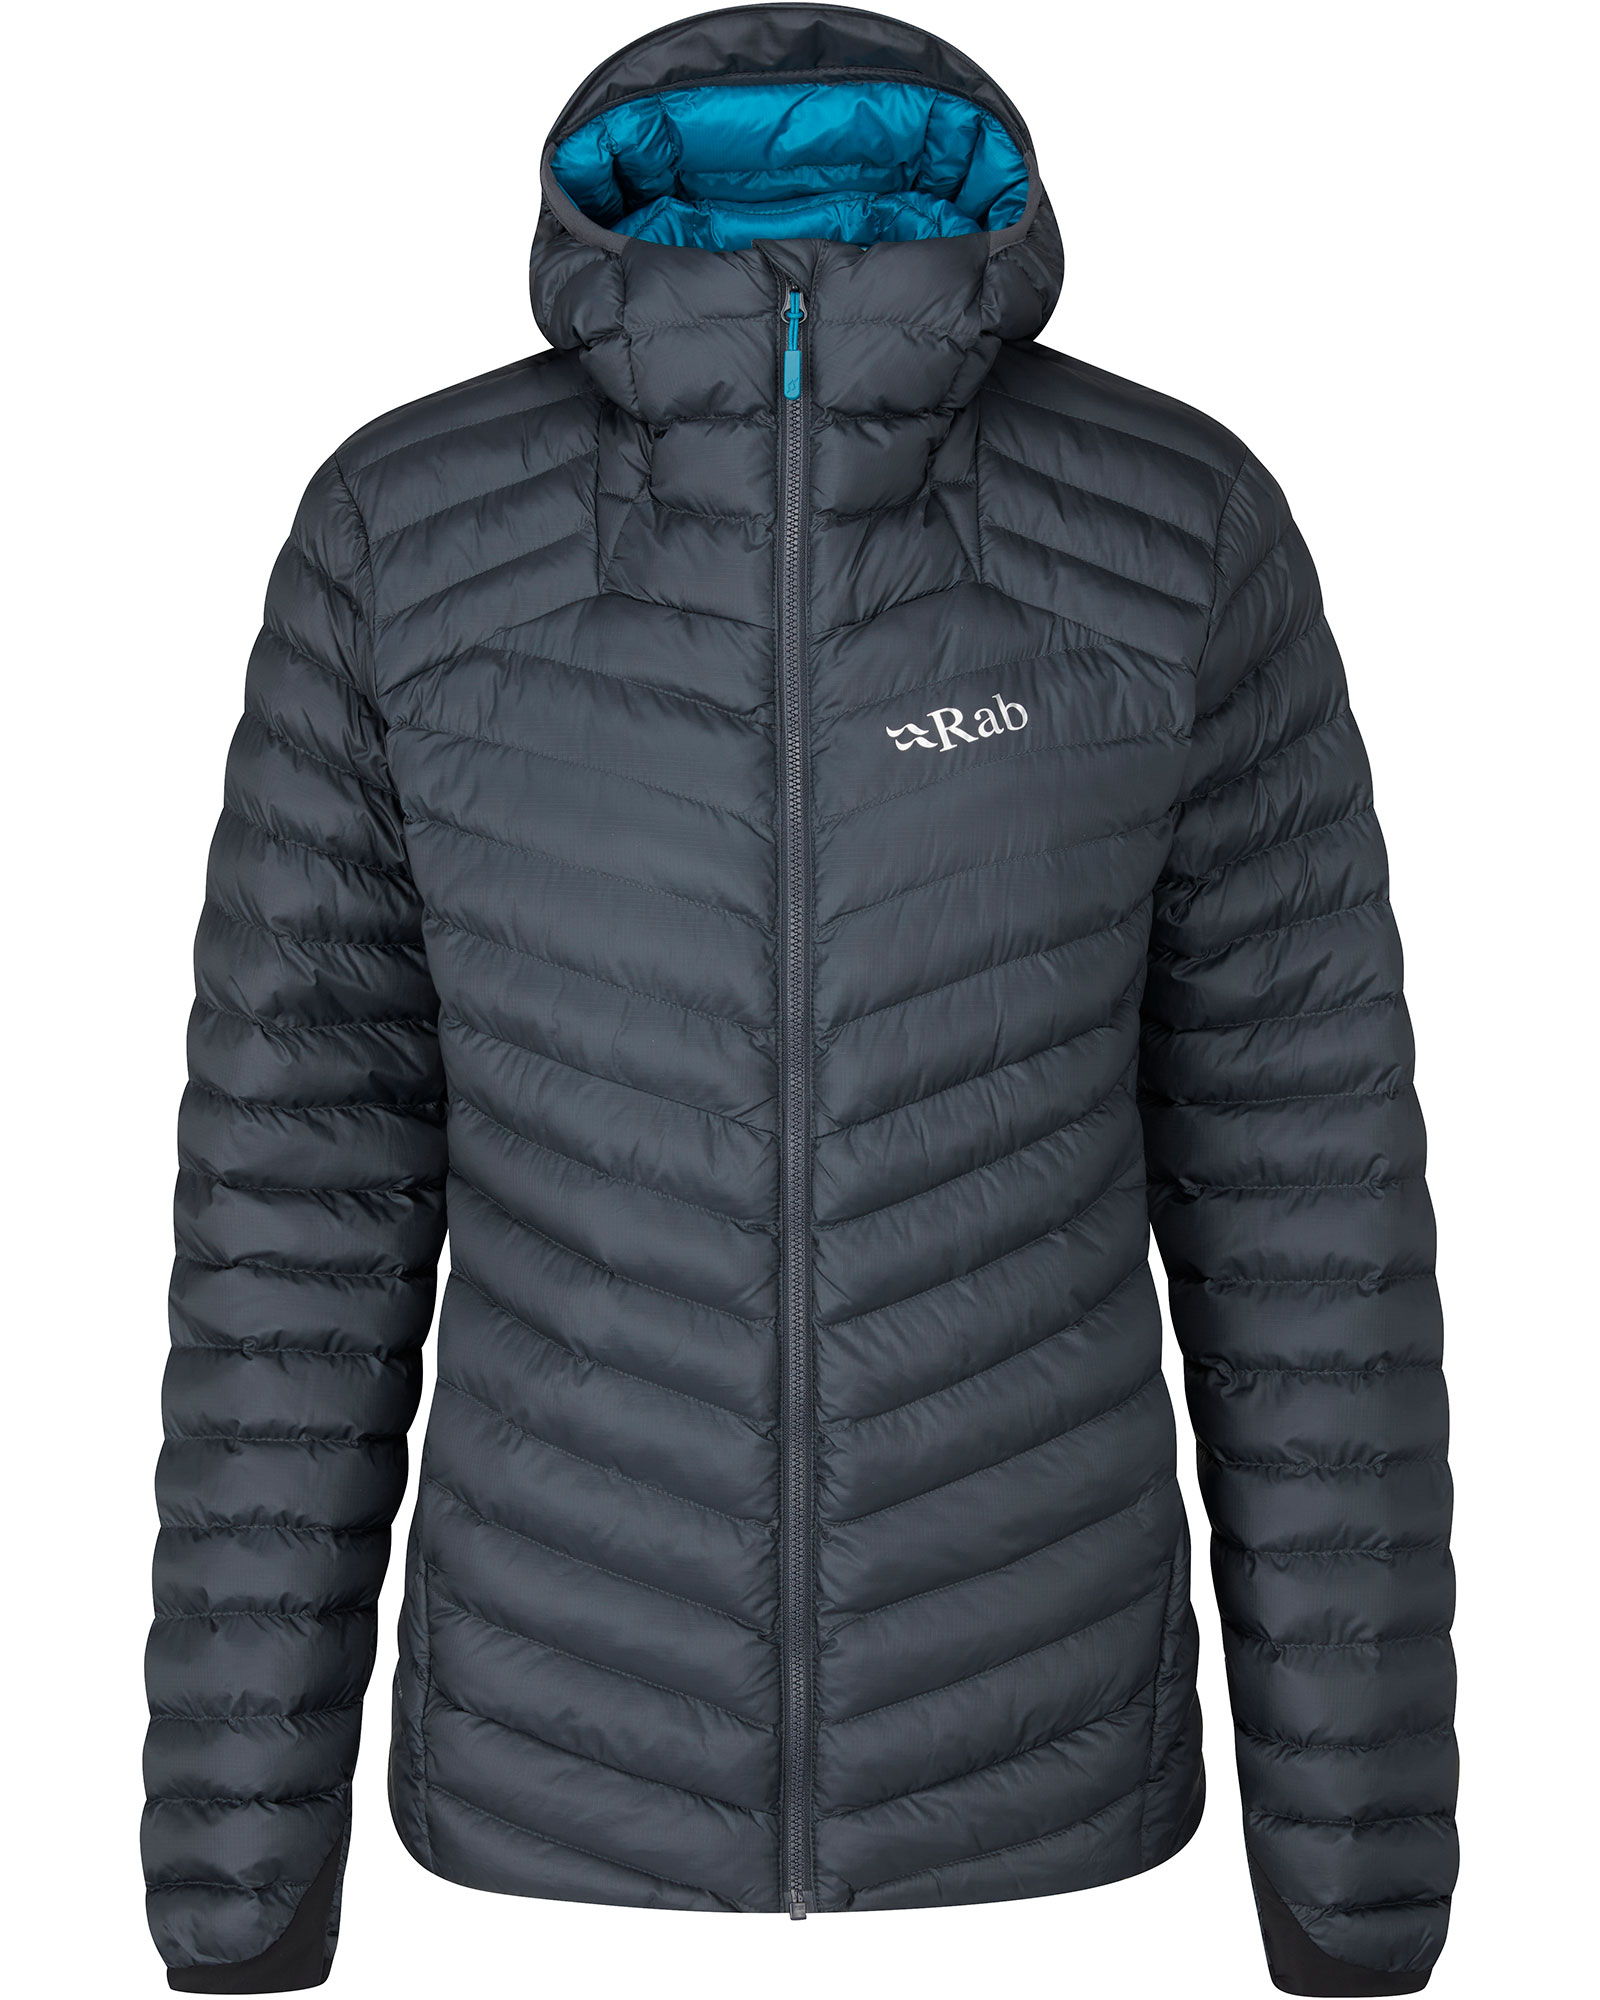 Rab Cirrus Alpine Women’s Insulated Jacket - Beluga 16